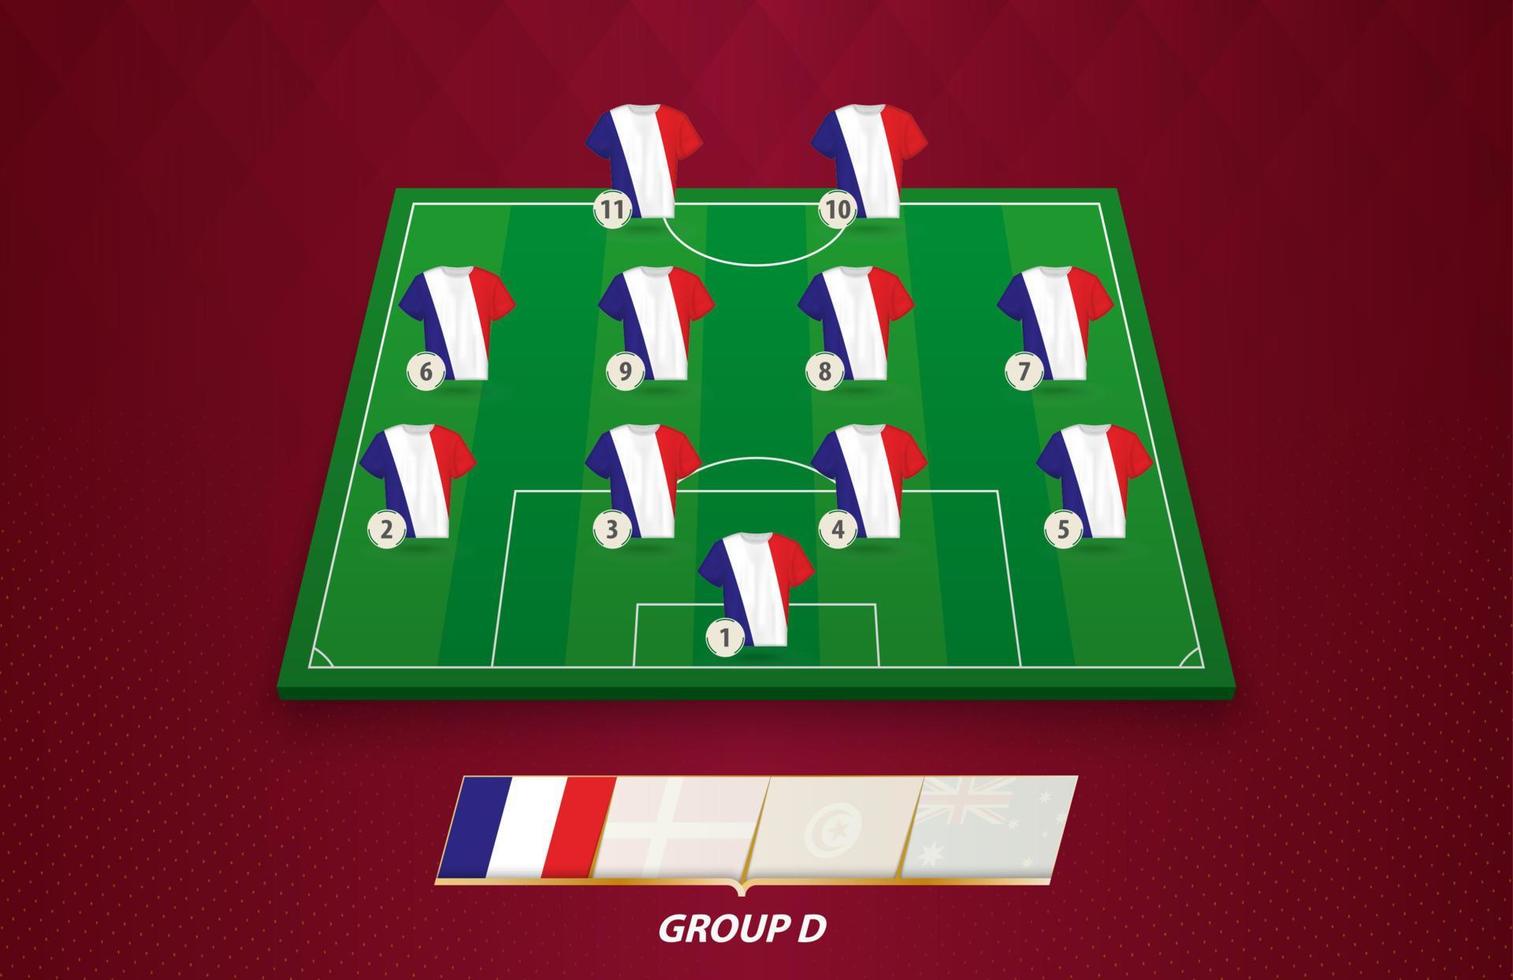 Amerikaans voetbal veld- met Frankrijk team in de rij gaan staan voor Europese wedstrijd. vector